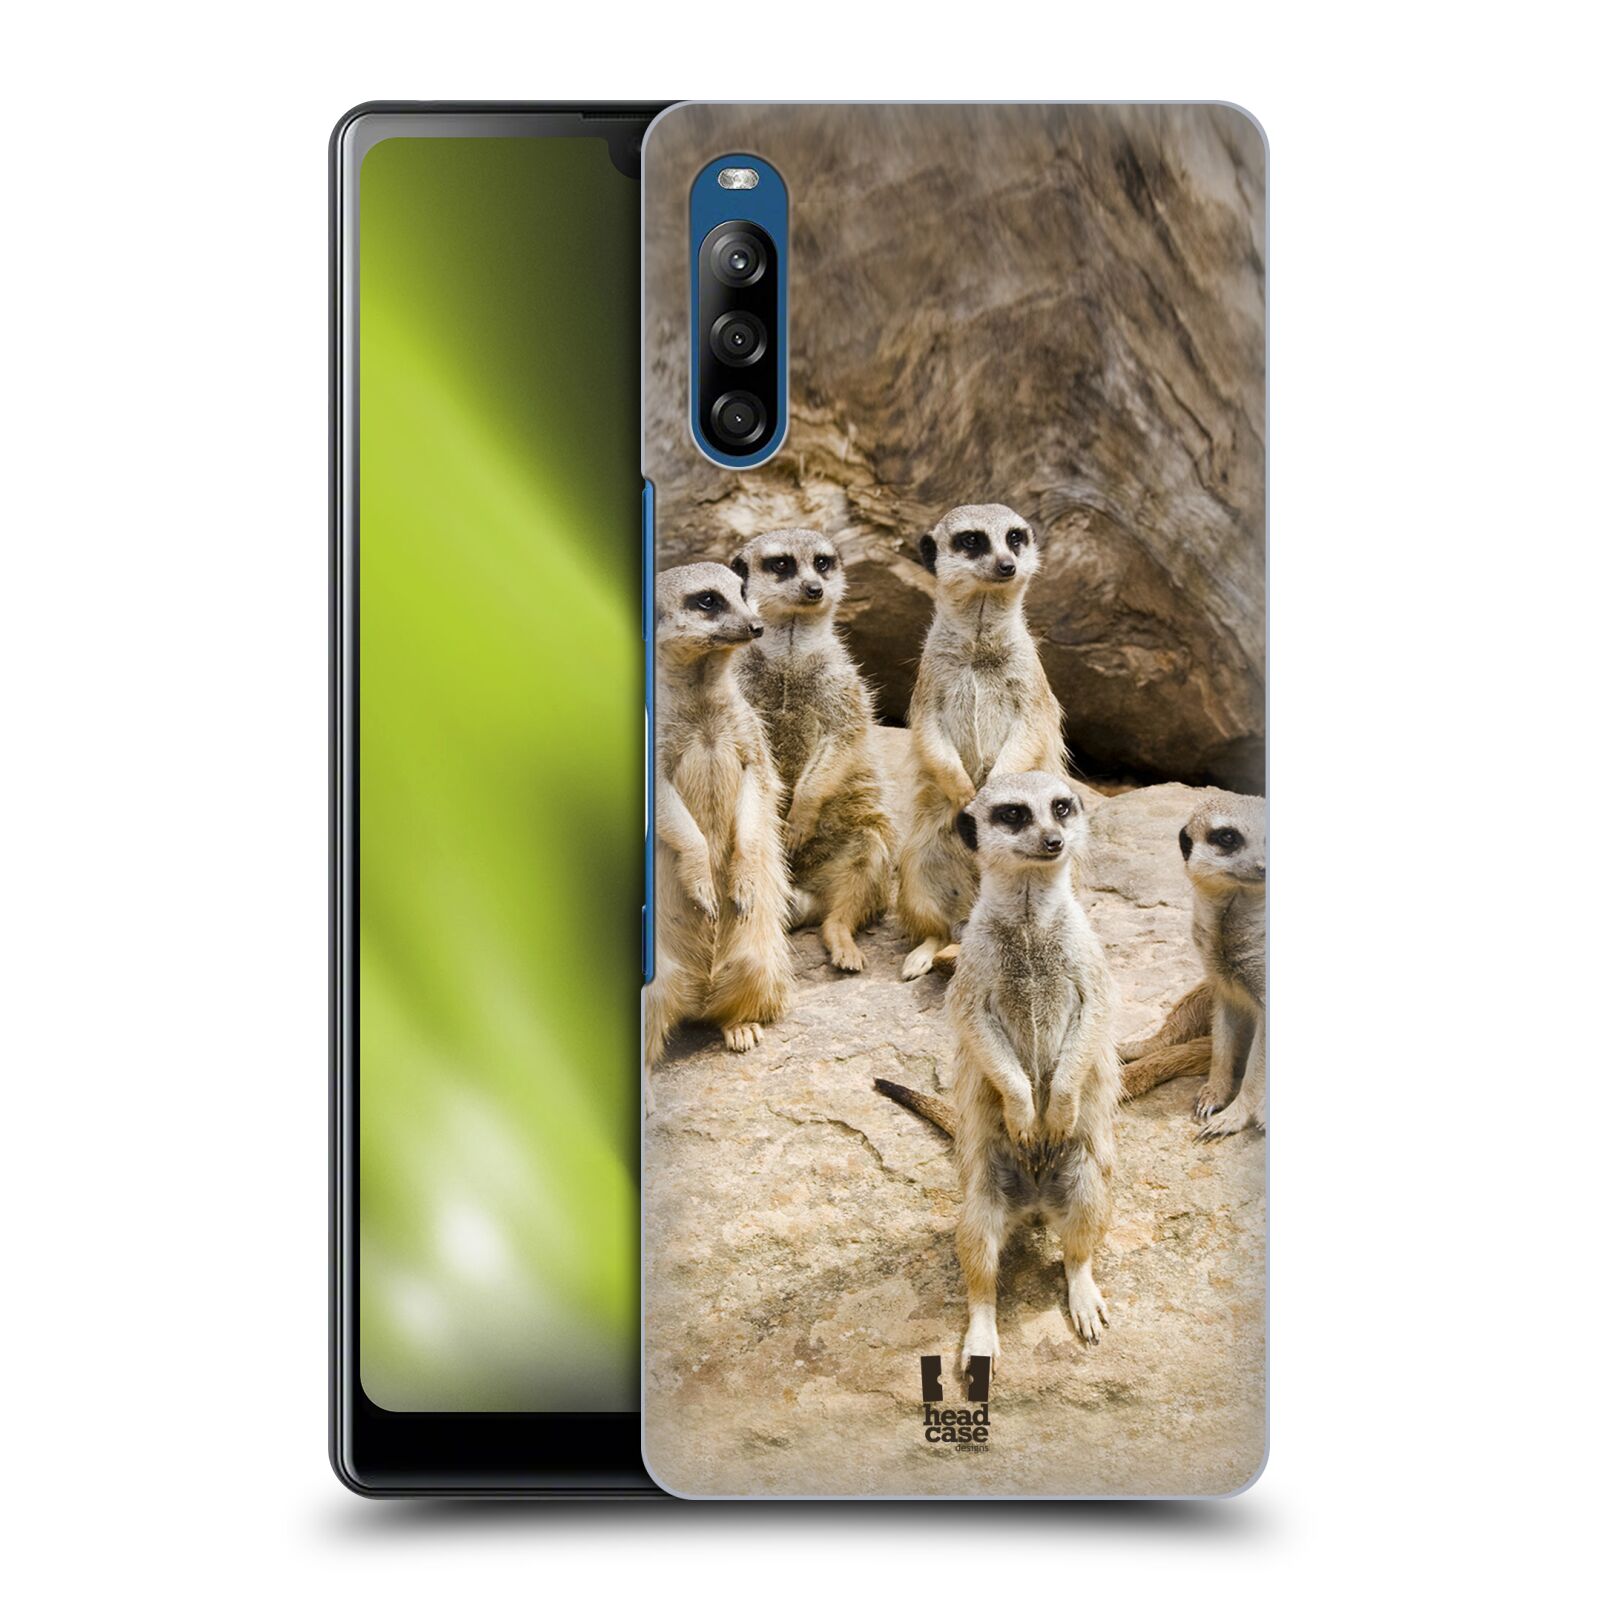 Zadní obal pro mobil Sony Xperia L4 - HEAD CASE - Svět zvířat roztomilé surikaty